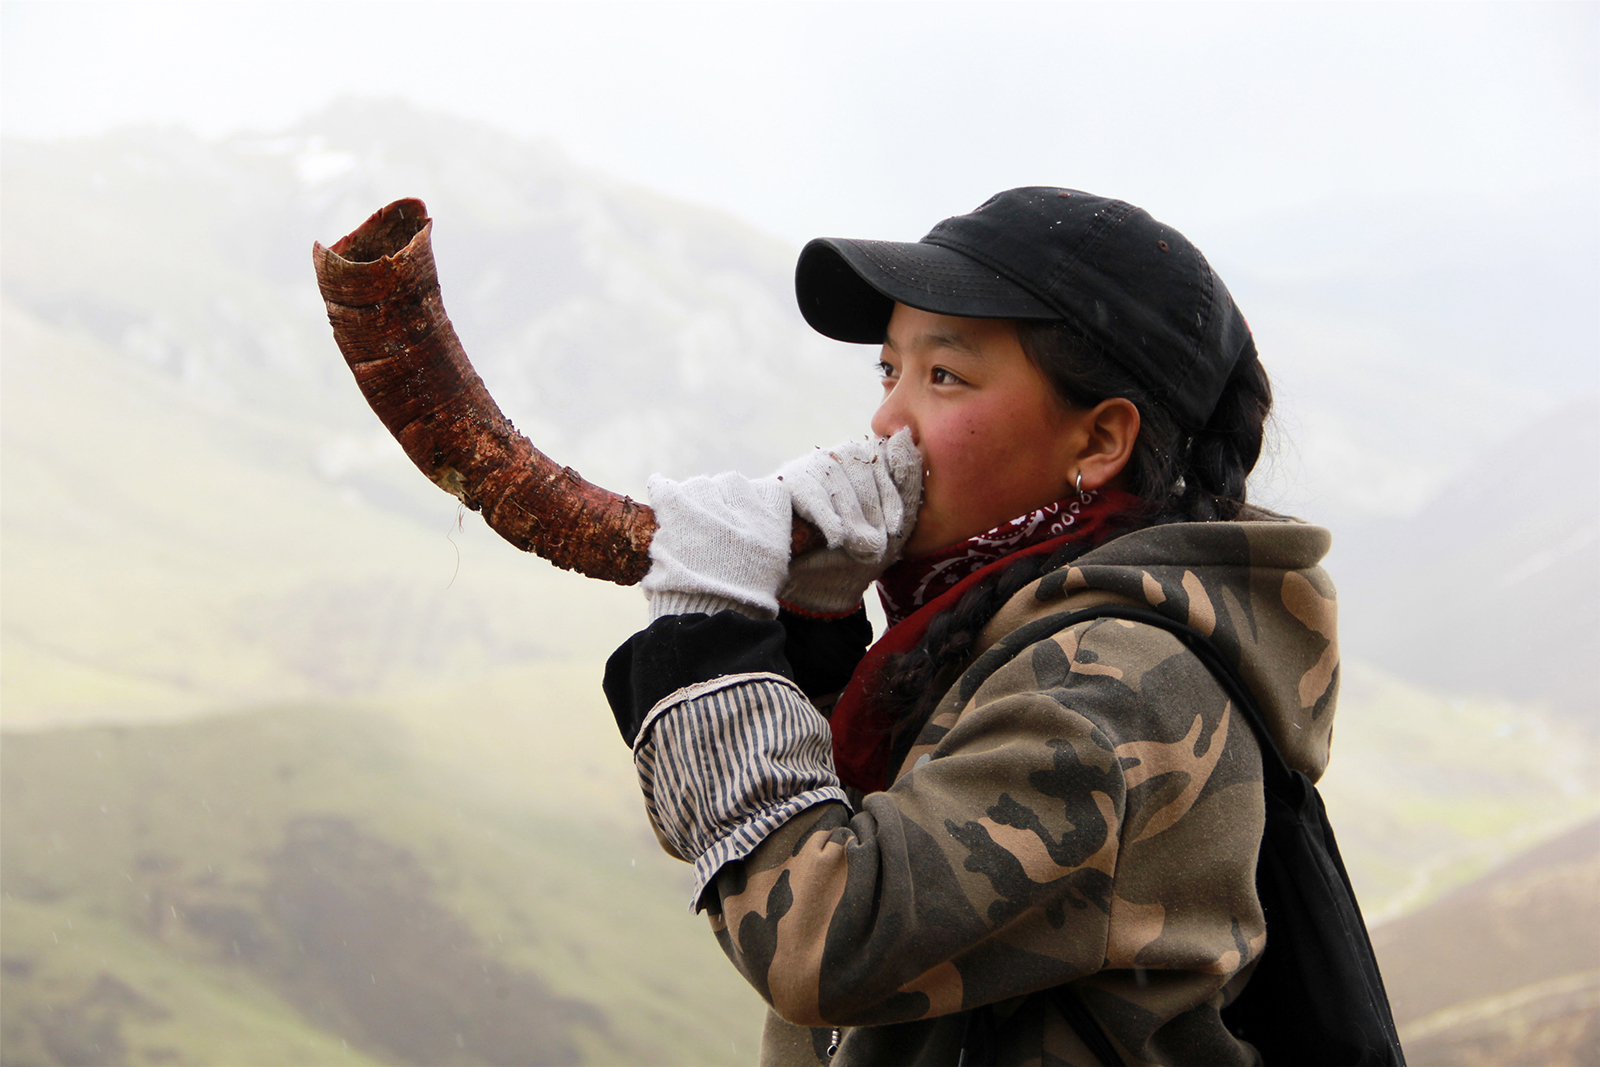 仁增朋措(高中組)青海《吹號角》 這個藏族女孩來自青藏高原玉樹山區，少數民族的孩子天生喜歡音樂藝術，可是她們沒錢去買，女孩從地上撿起一個廢棄的牛角當做樂器，體現了她們從小就有的藝術天賦和音樂愛好。搜索復制